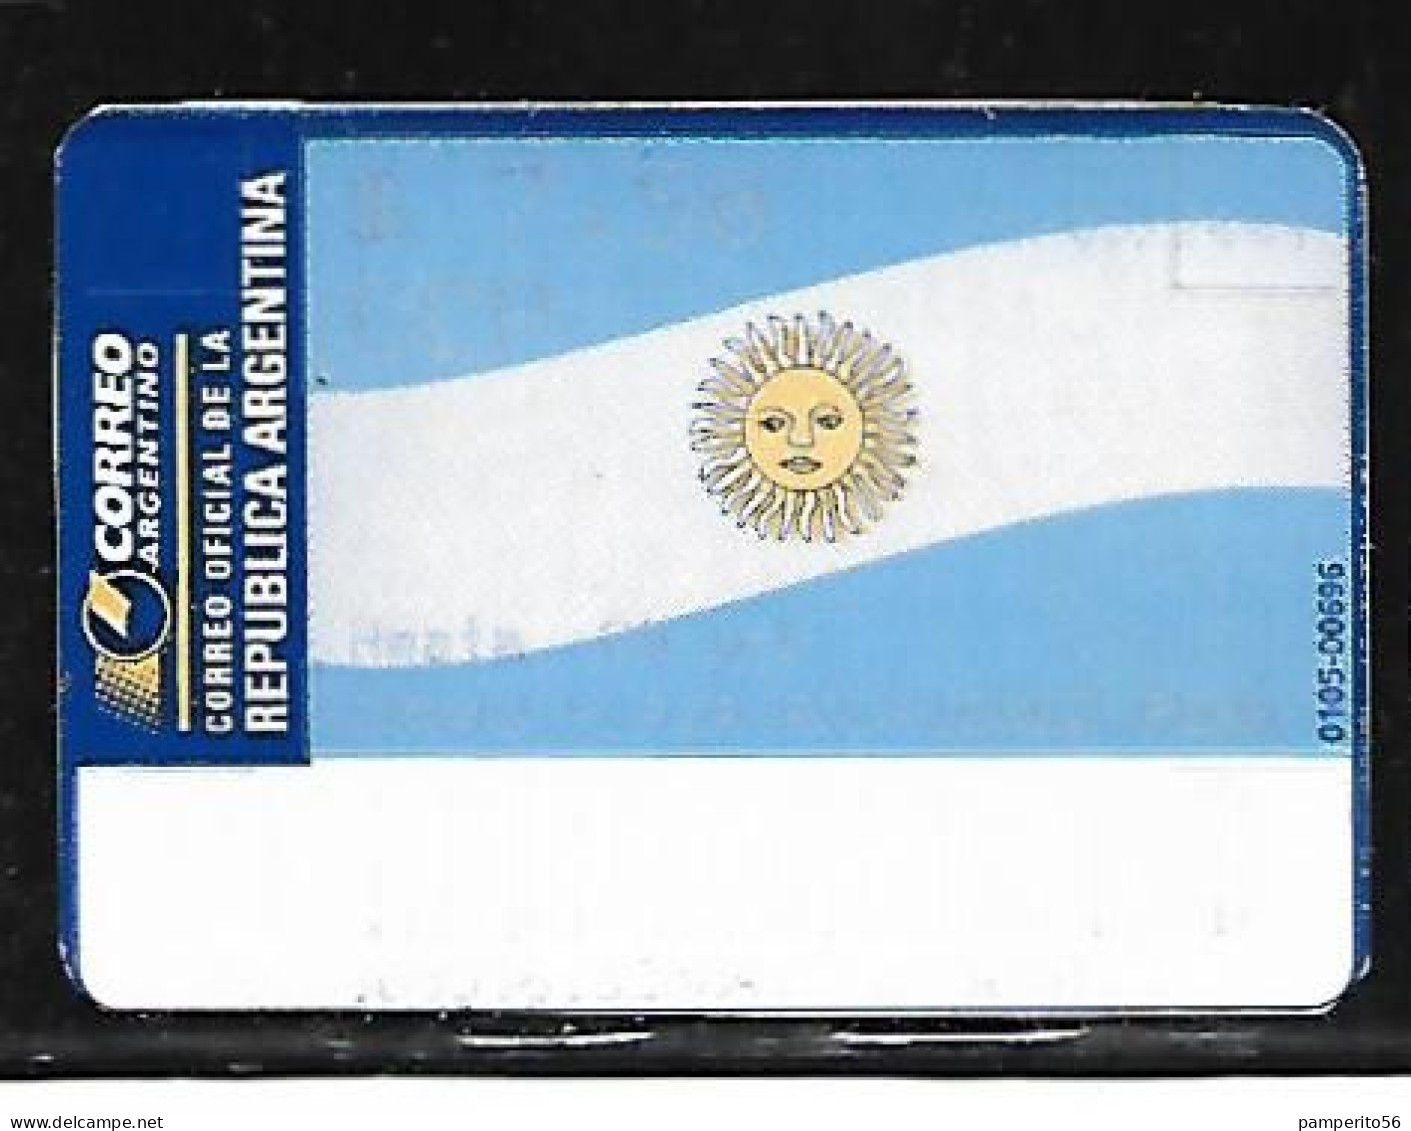 ARGENTINA - AÑO 2002 - Etiqueta De Franqueo CCP 20 Grs - Rodriguez Peña - Frankeervignetten (Frama)